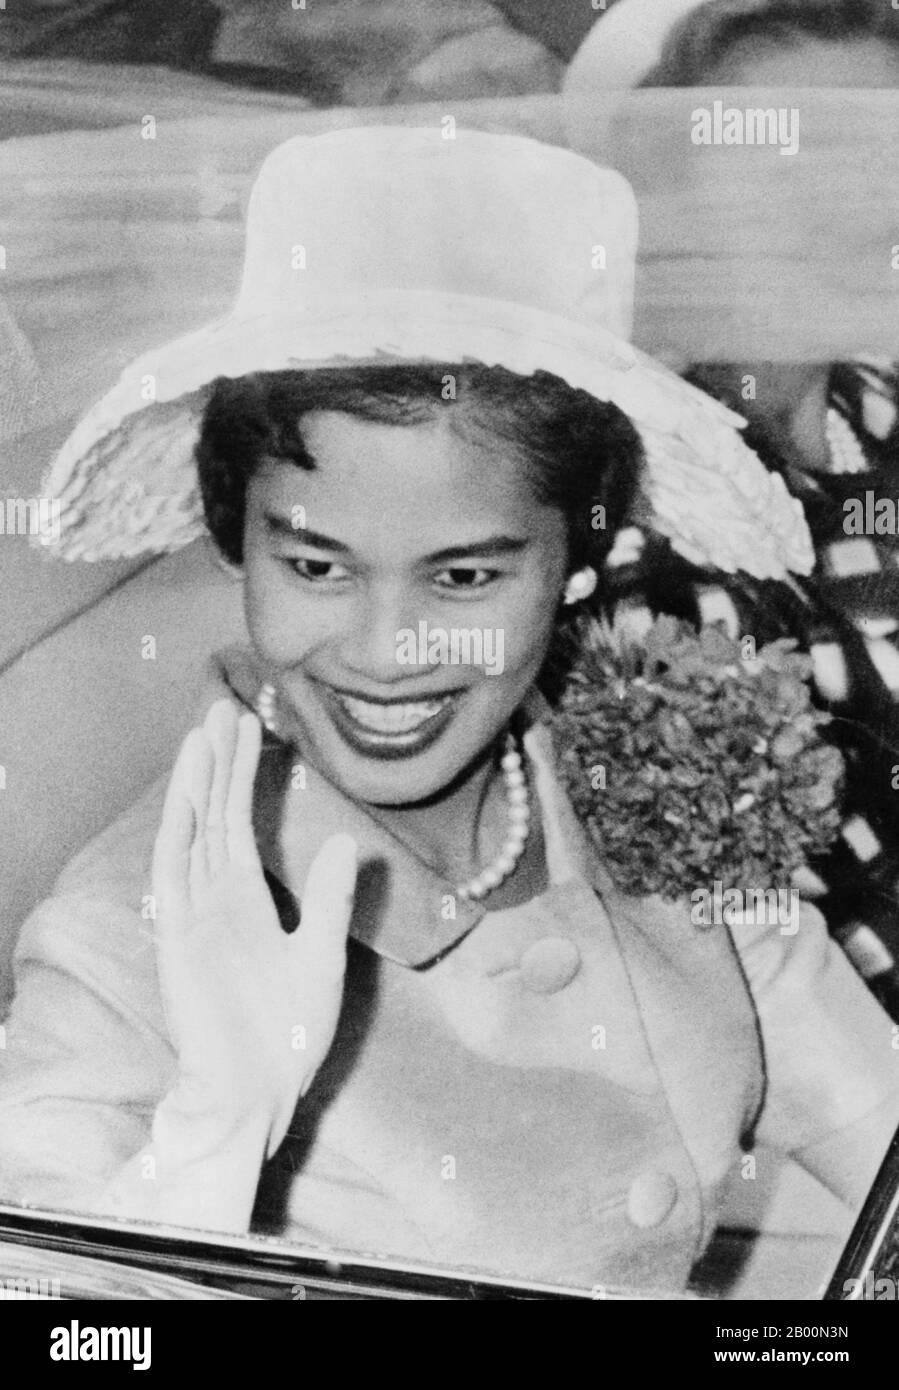 Thaïlande: La reine Sirikit lors d'un défilé à New York, juillet 1960. Somdet Phra Nang Chao Sirikit Phra Borommarachininat («sa Majesté la Reine Regent Sirikit»), née Mum Rajawongse Sirikit Kitiyakara le 12 août 1932, est la reine consort de Bhumibol Adulyadej (Rama IX), roi de Thaïlande. Elle est la deuxième reine Regent de Thaïlande (la première reine Regent était la reine Saovabha Bongsri de Siam, plus tard la reine Sri Patcharindra, la reine mère). En tant que consort du roi qui est actuellement le plus long chef d'État régnant au monde, elle est aussi la plus longue consort au monde d'un monarque. Banque D'Images